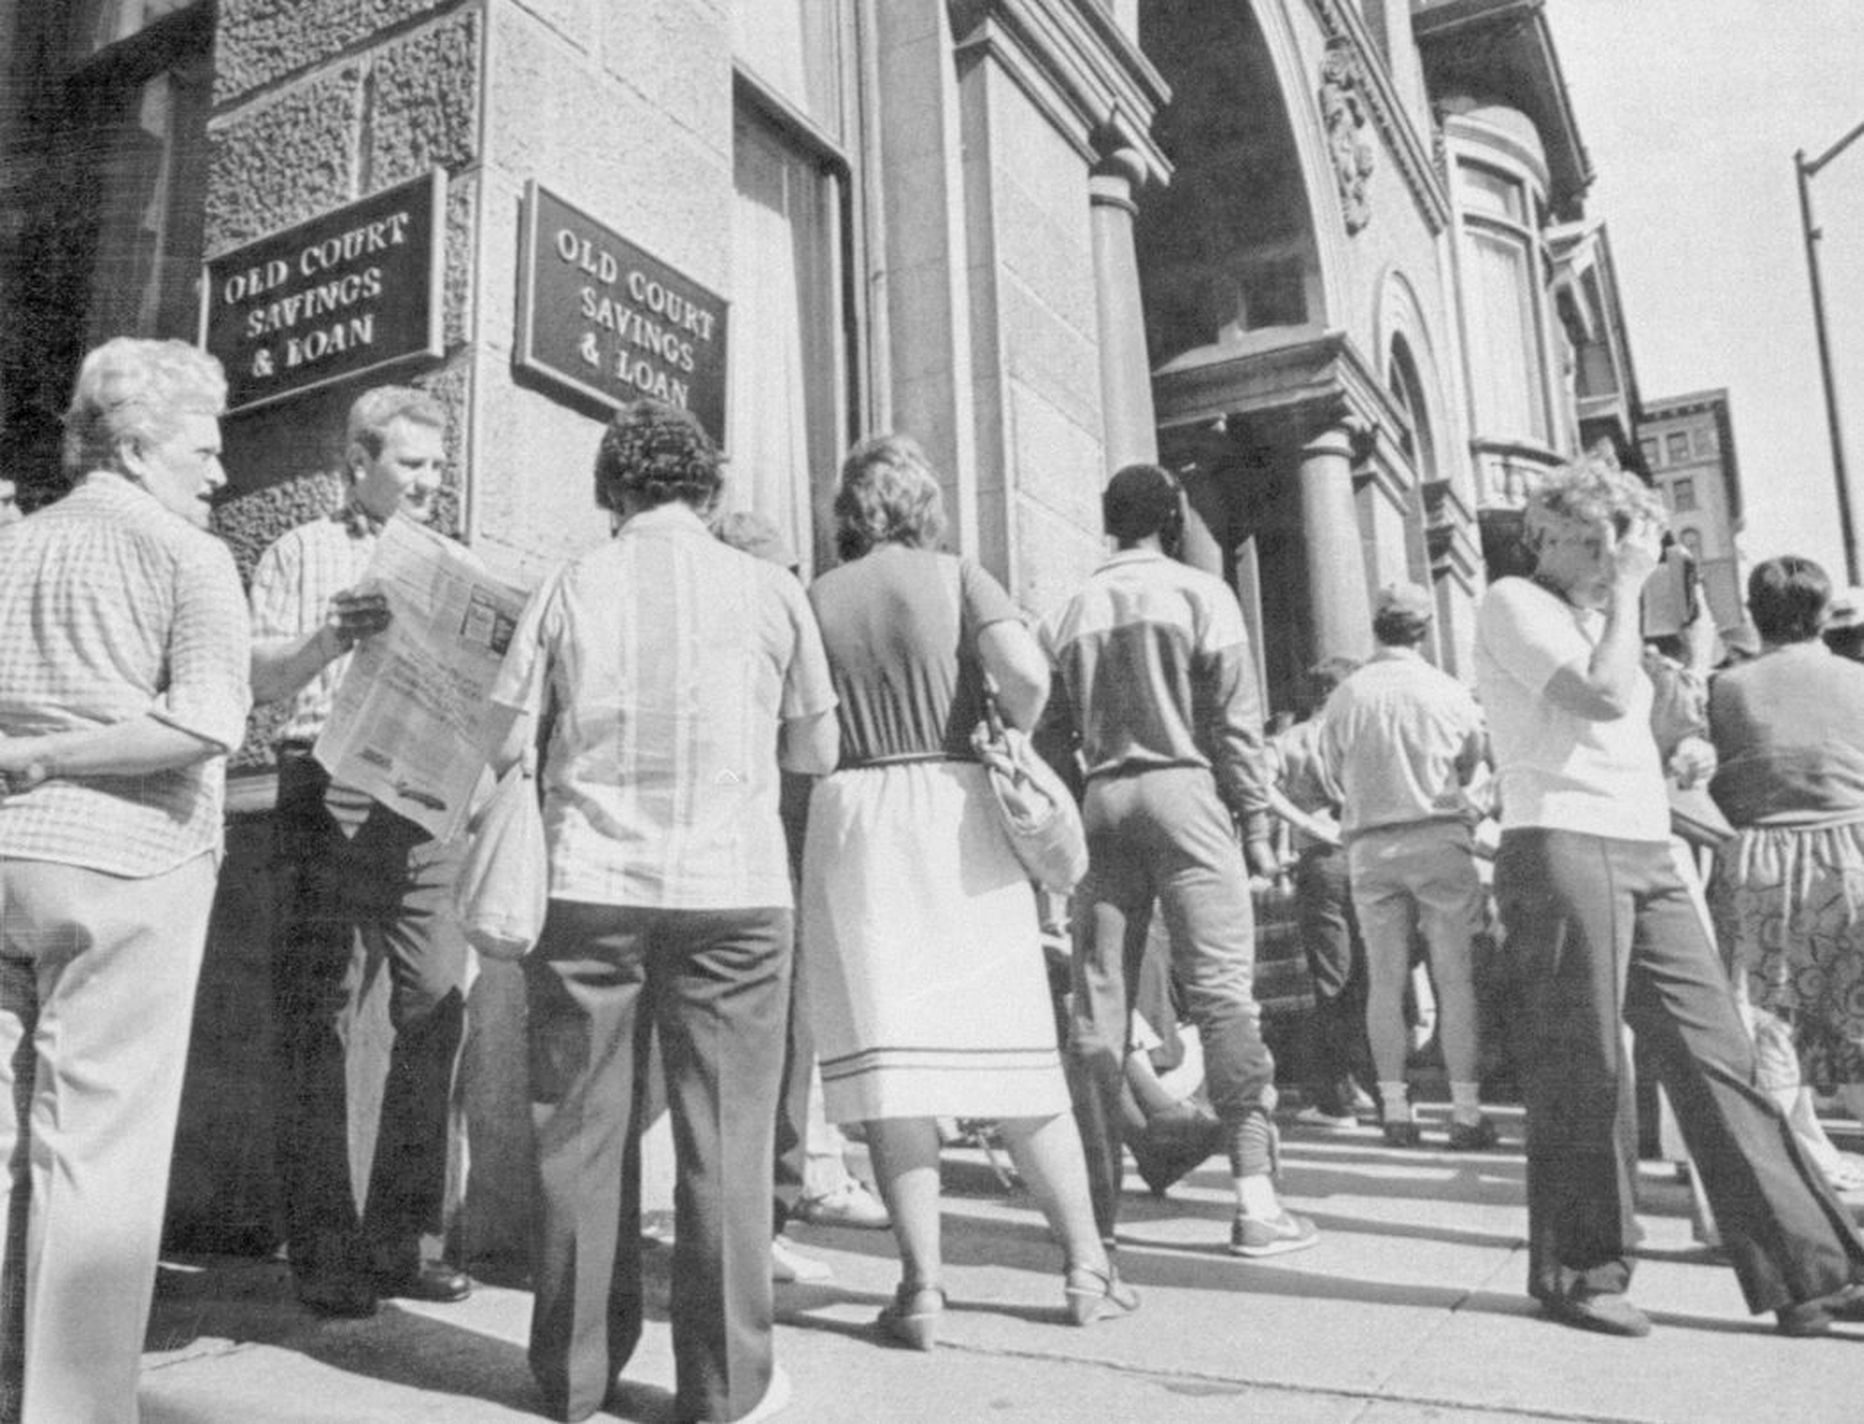 Inimesed 1985. aastal neljandat päeva Baltimore'is sabas seismas, et hoiu- ja laenuühistust Old Court Savings & Loan oma raha välja võtta.